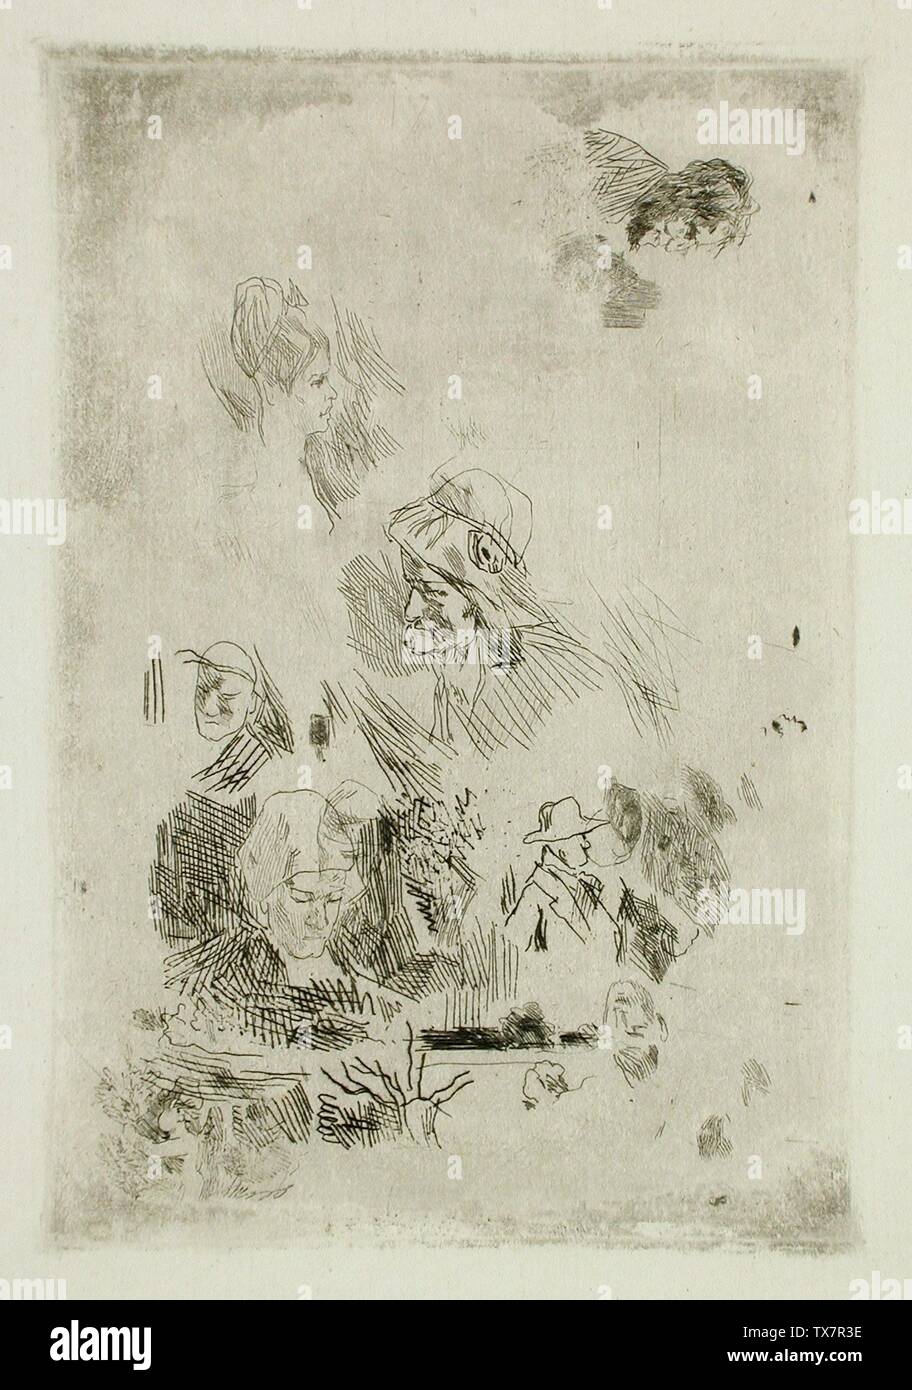 La Quotidienne; Bélgica, 1874 impresiones; grabados grabados sobre papel colocado Regalo de Michael G. Wilson (M.82.260.10) estampados y dibujos; 1874date QS:P571,+1874-00-00T00:00:00Z/9; Foto de stock